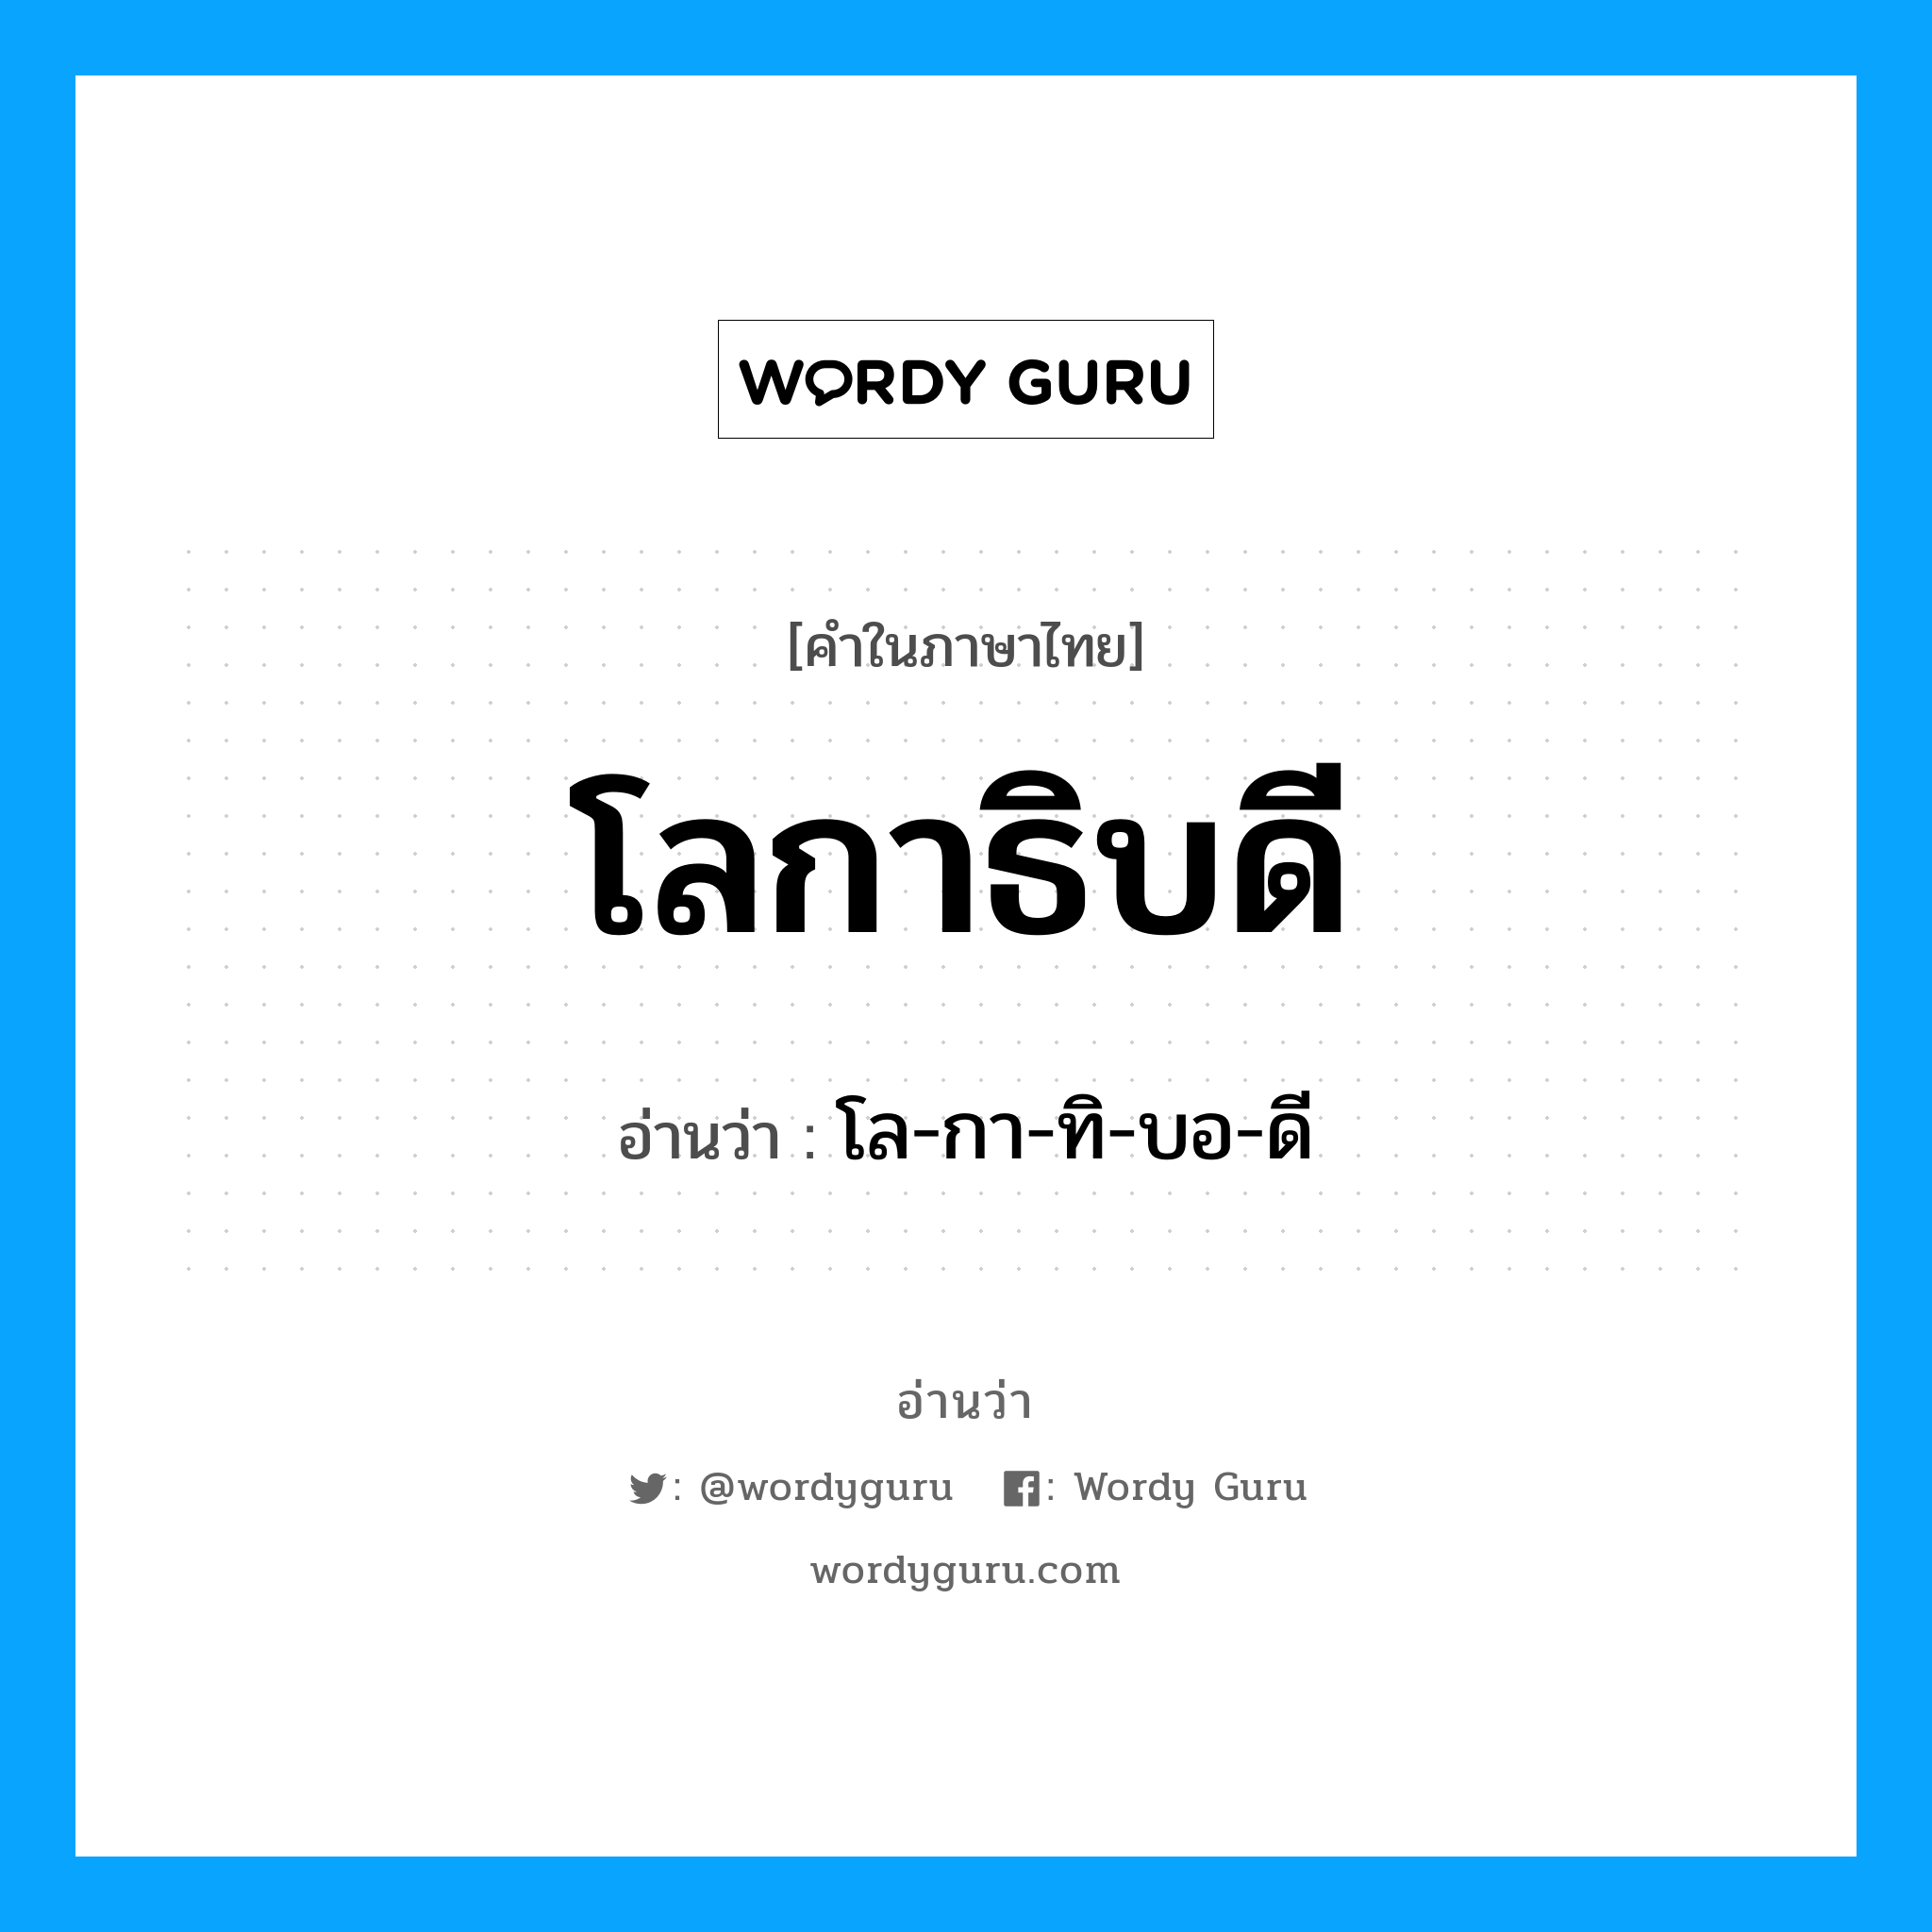 โล-กา-ทิ-บอ-ดี เป็นคำอ่านของคำไหน?, คำในภาษาไทย โล-กา-ทิ-บอ-ดี อ่านว่า โลกาธิบดี